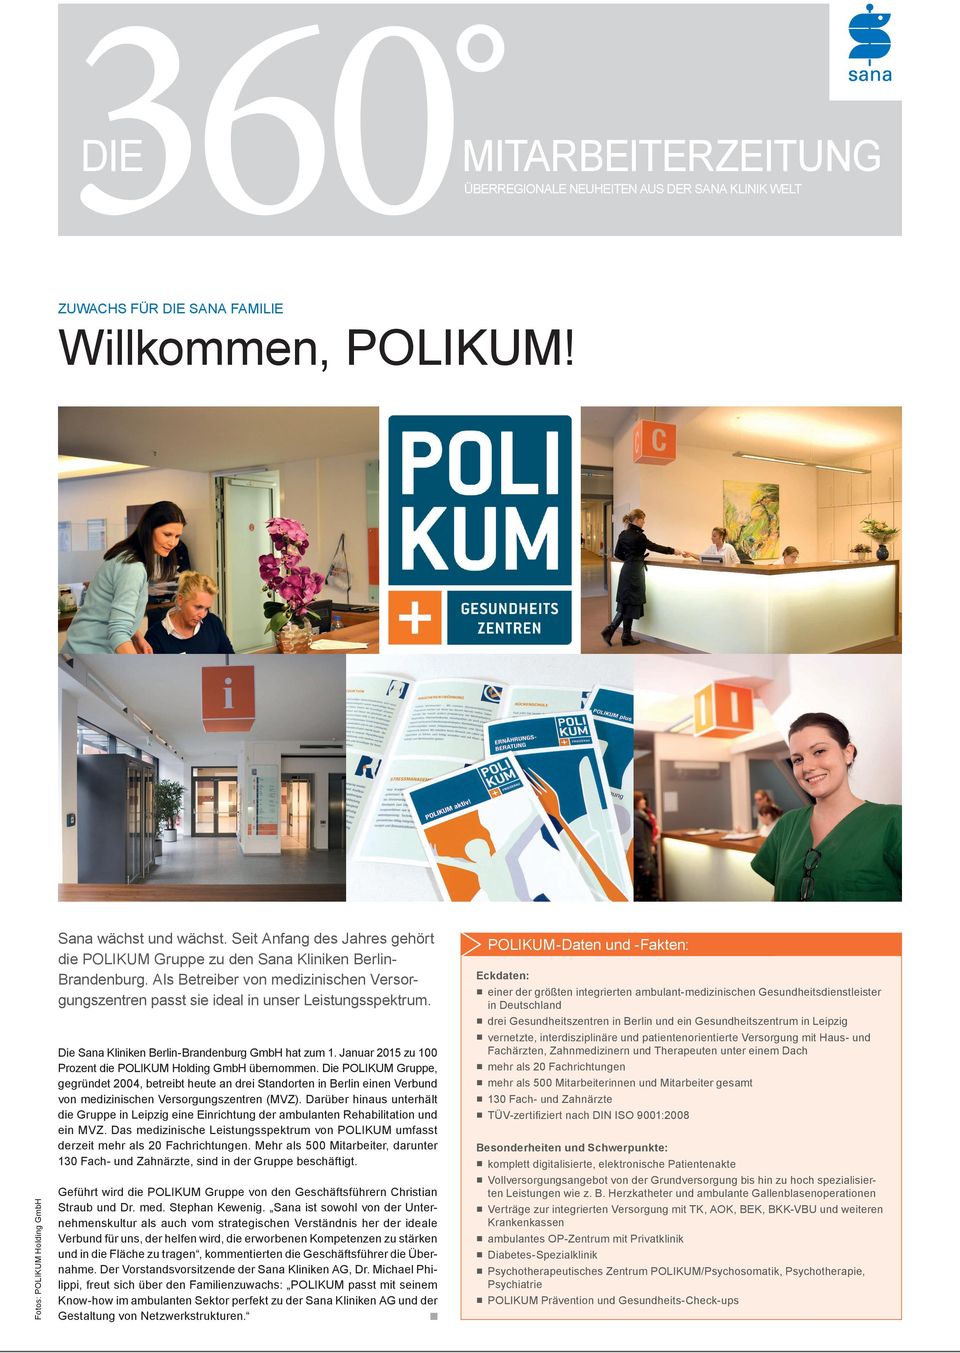 Die Sana Kliniken Berlin-Brandenburg GmbH hat zum 1. Januar 2015 zu 100 Prozent die POLIKUM Holding GmbH übernommen.